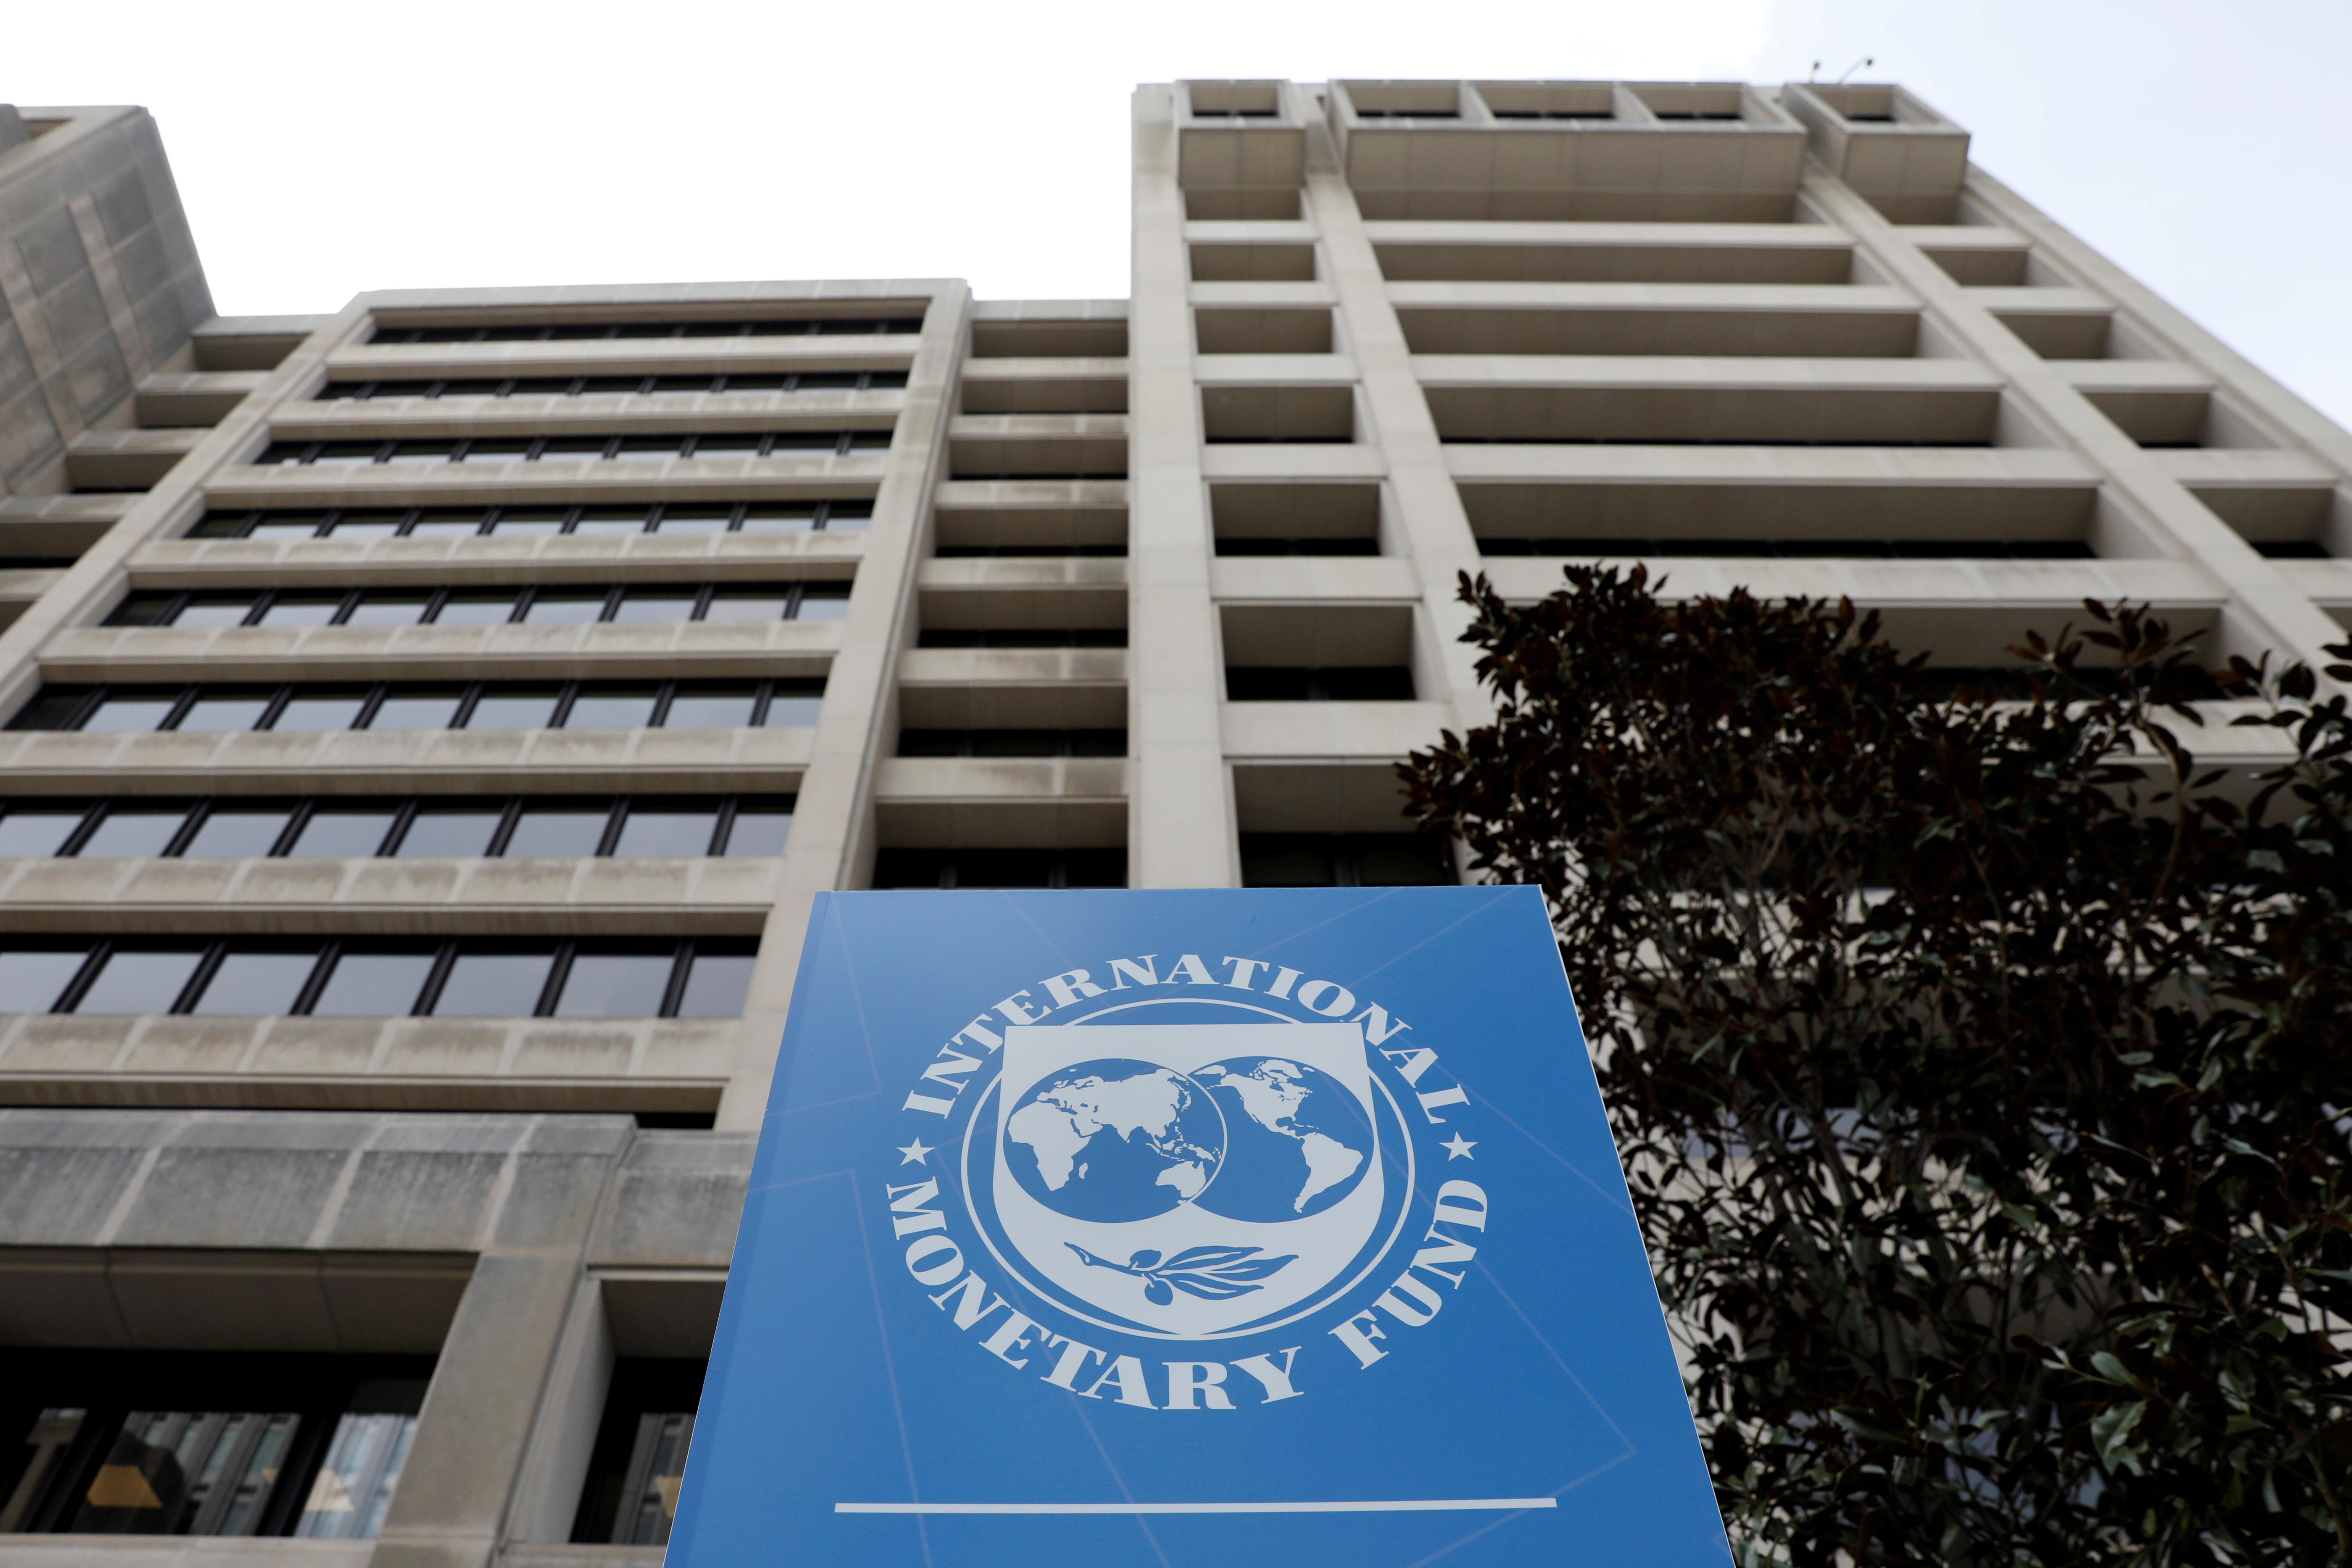 Фонд всемирный банк. Международный валютный фонд (МВФ) - International monetary Fund (IMF). Штаб квартира МВФ В Вашингтоне. Здание МВФ США. Флаг МВФ.